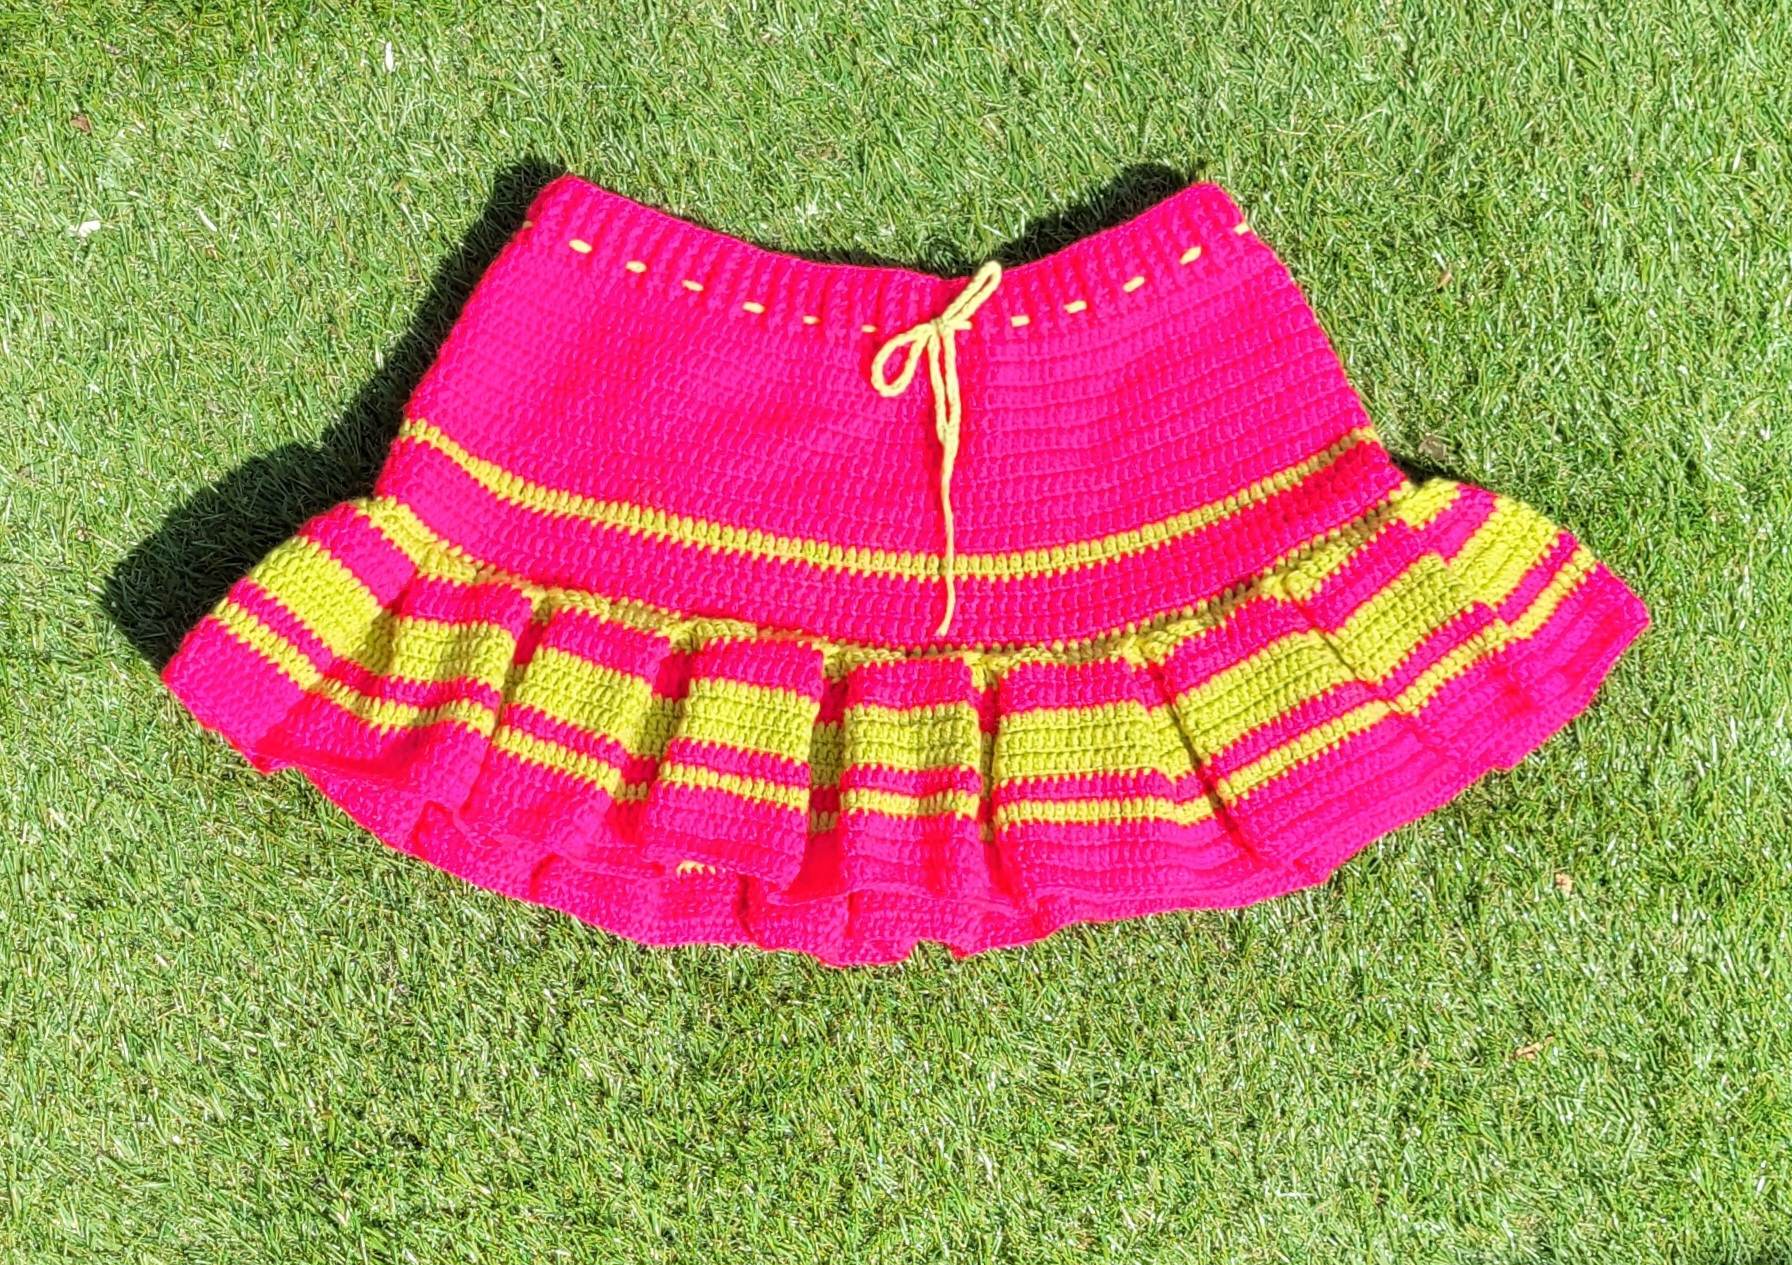 crochet skirt works fast